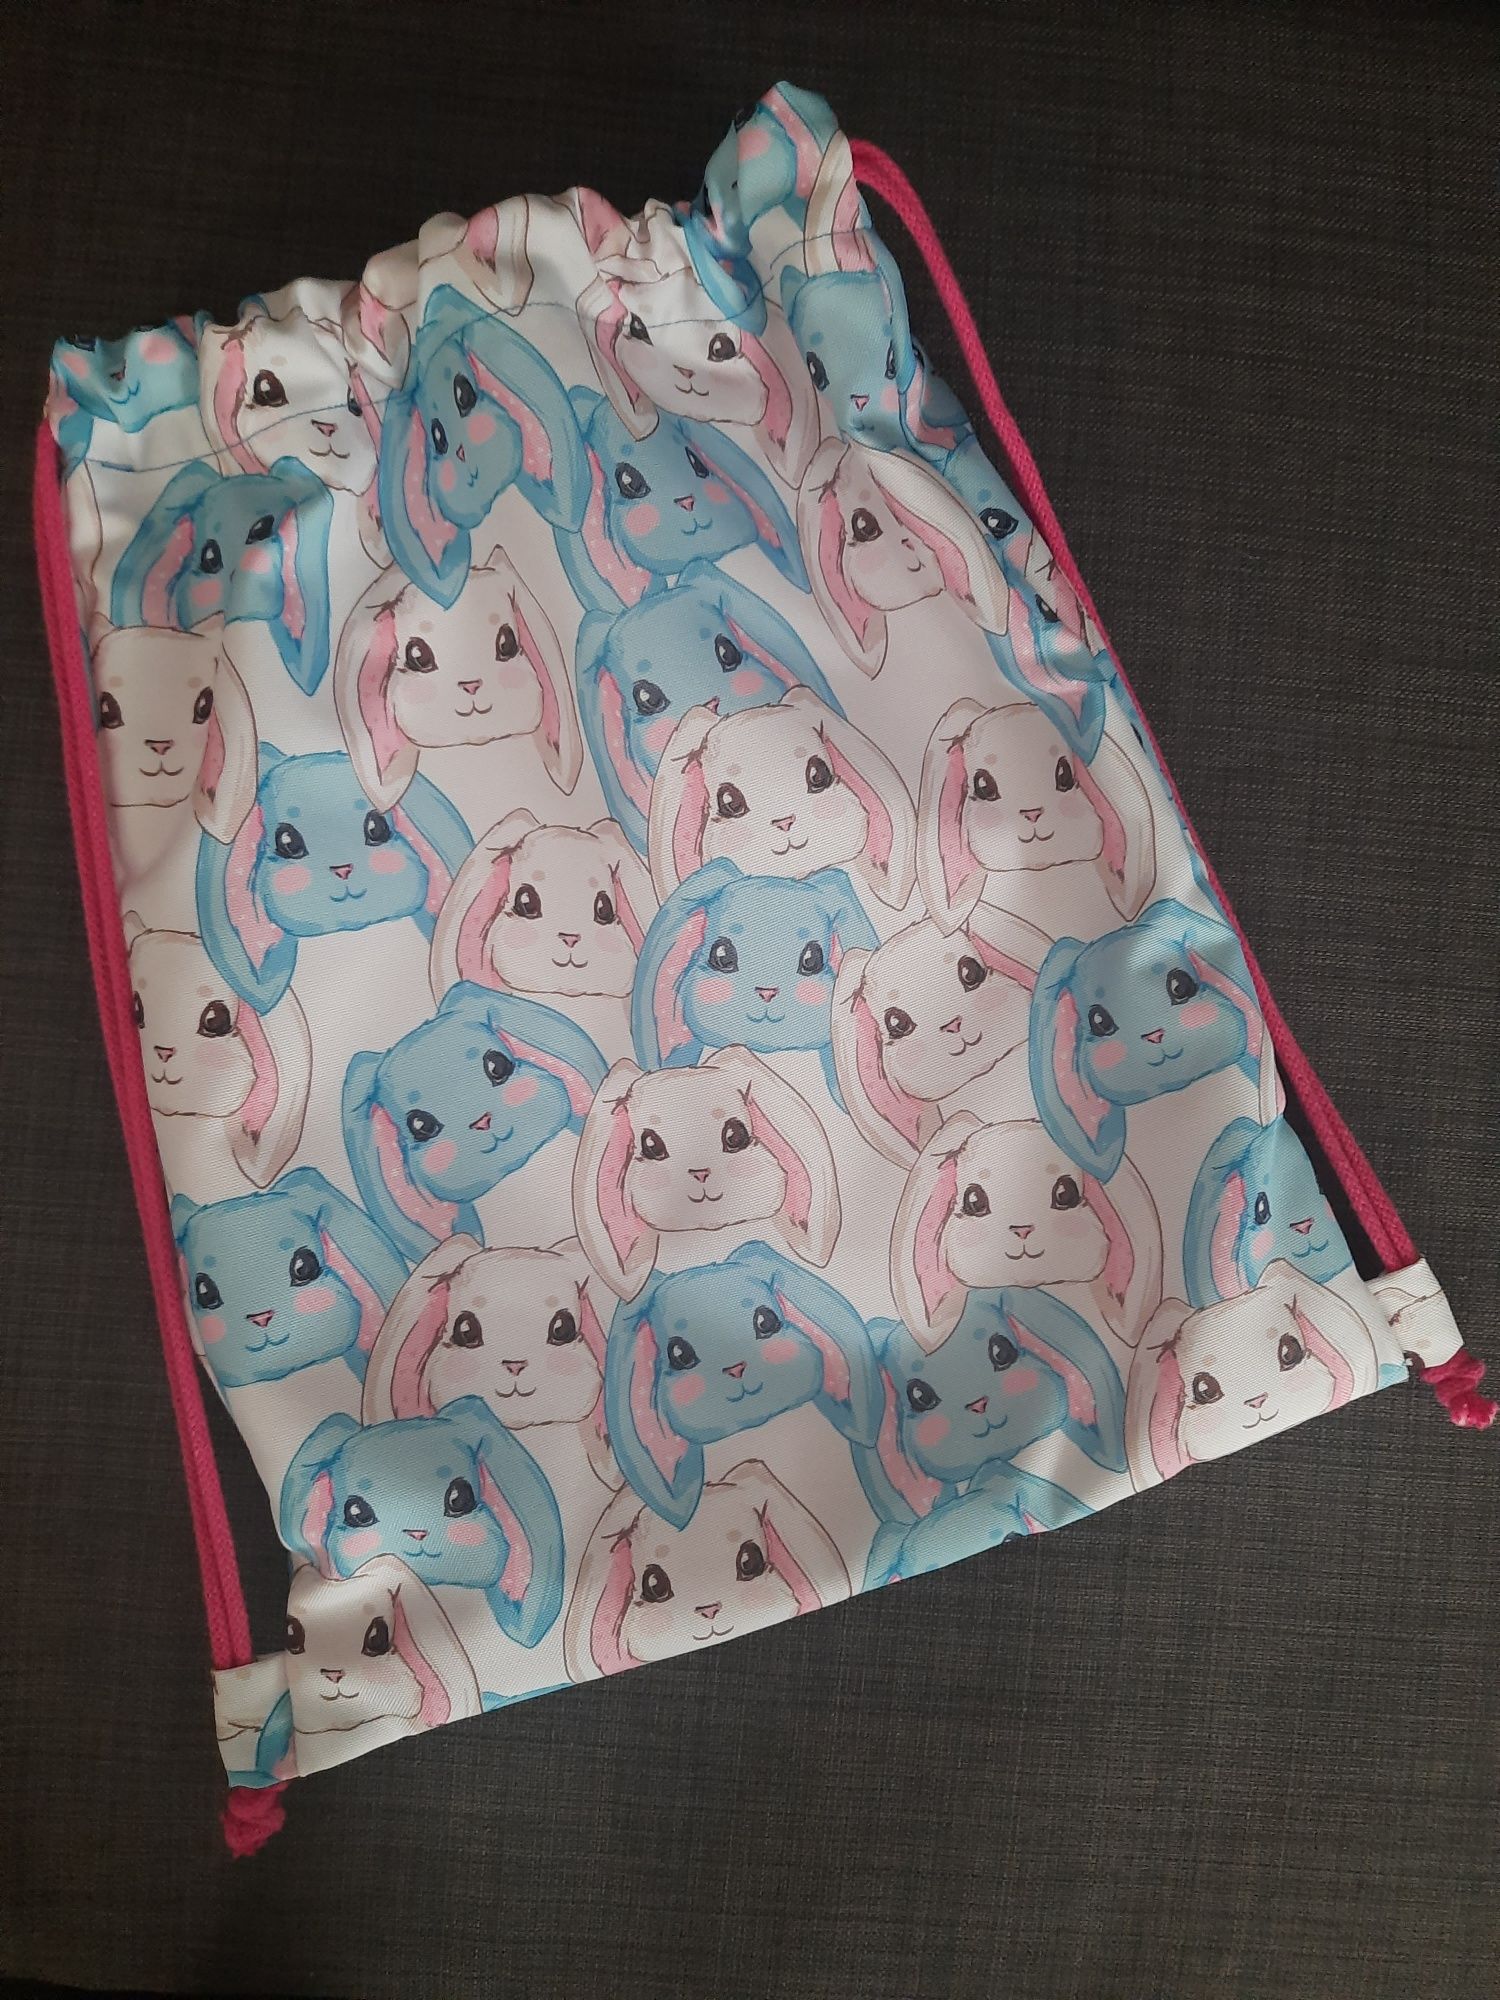 Nowy workoplecak Handmade plecak worek z kieszonką dla dzieci - królik